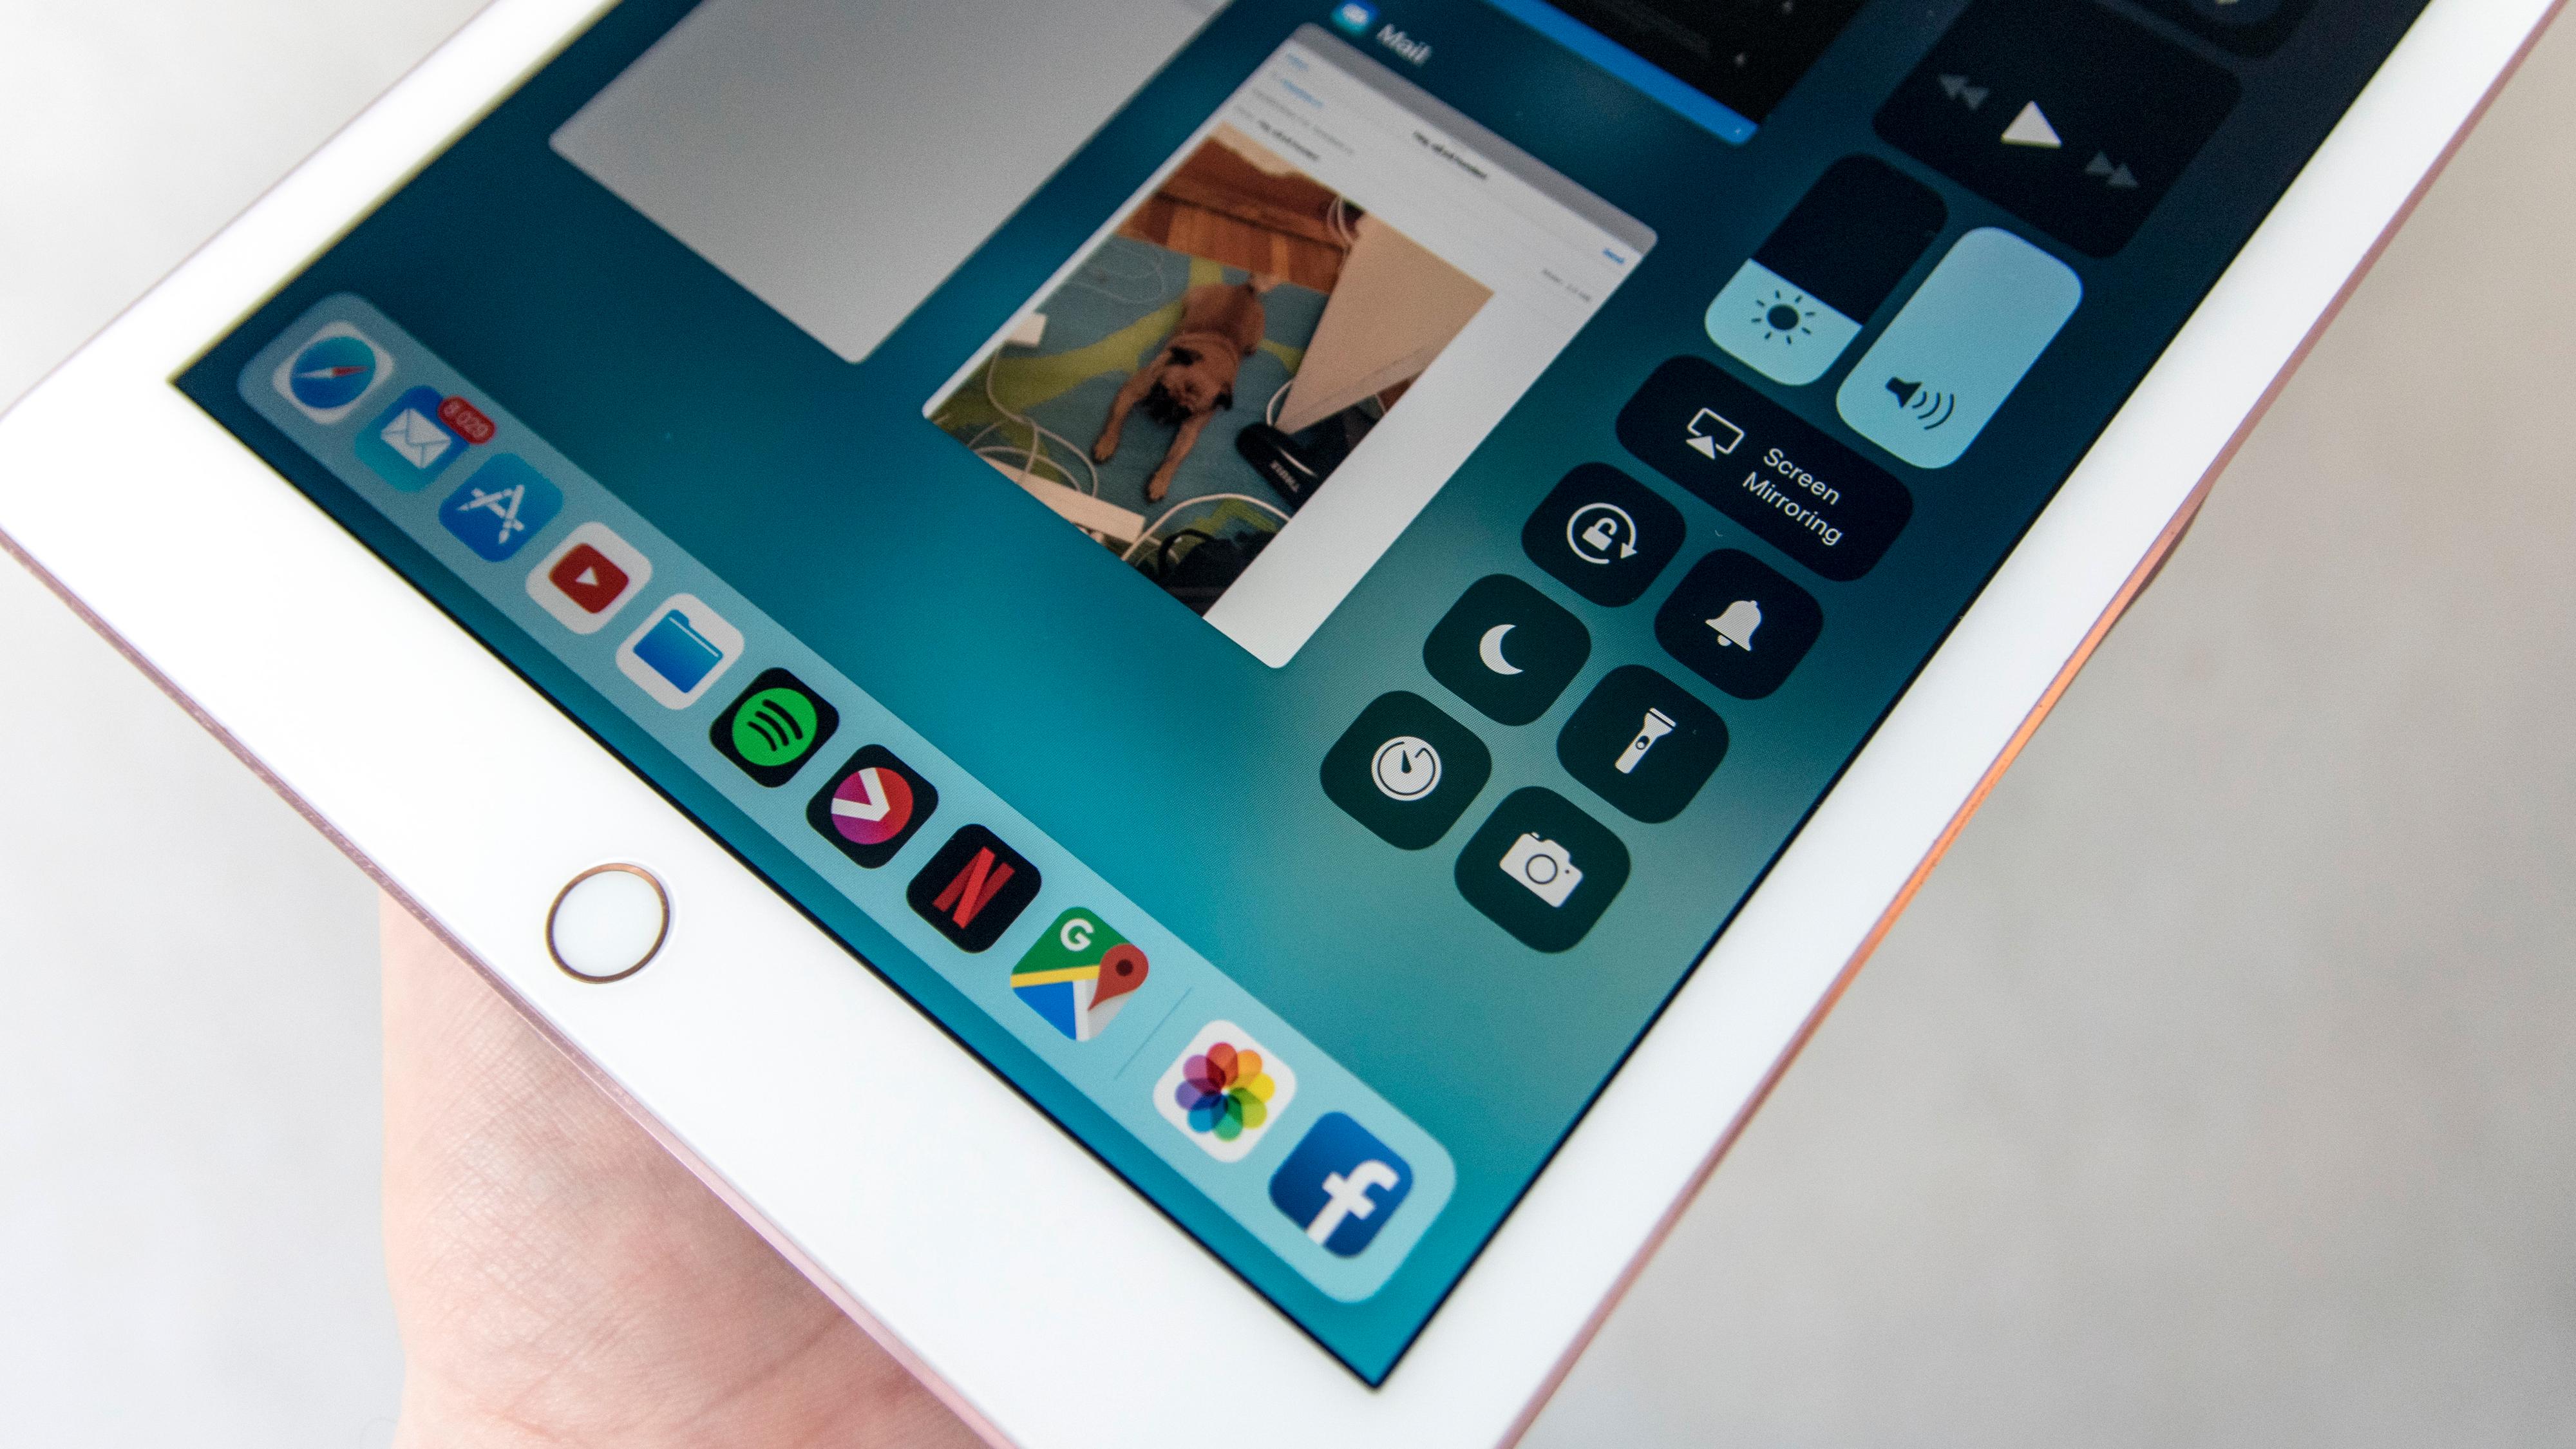 iOS 11 kom i fjor og har blant annet gitt iPad en mengde nye funksjoner. Men det er slett ikke sikkert det blir en haug nye funksjoner på iOS 12. Bilde: Finn Jarle Kvalheim, Tek.no